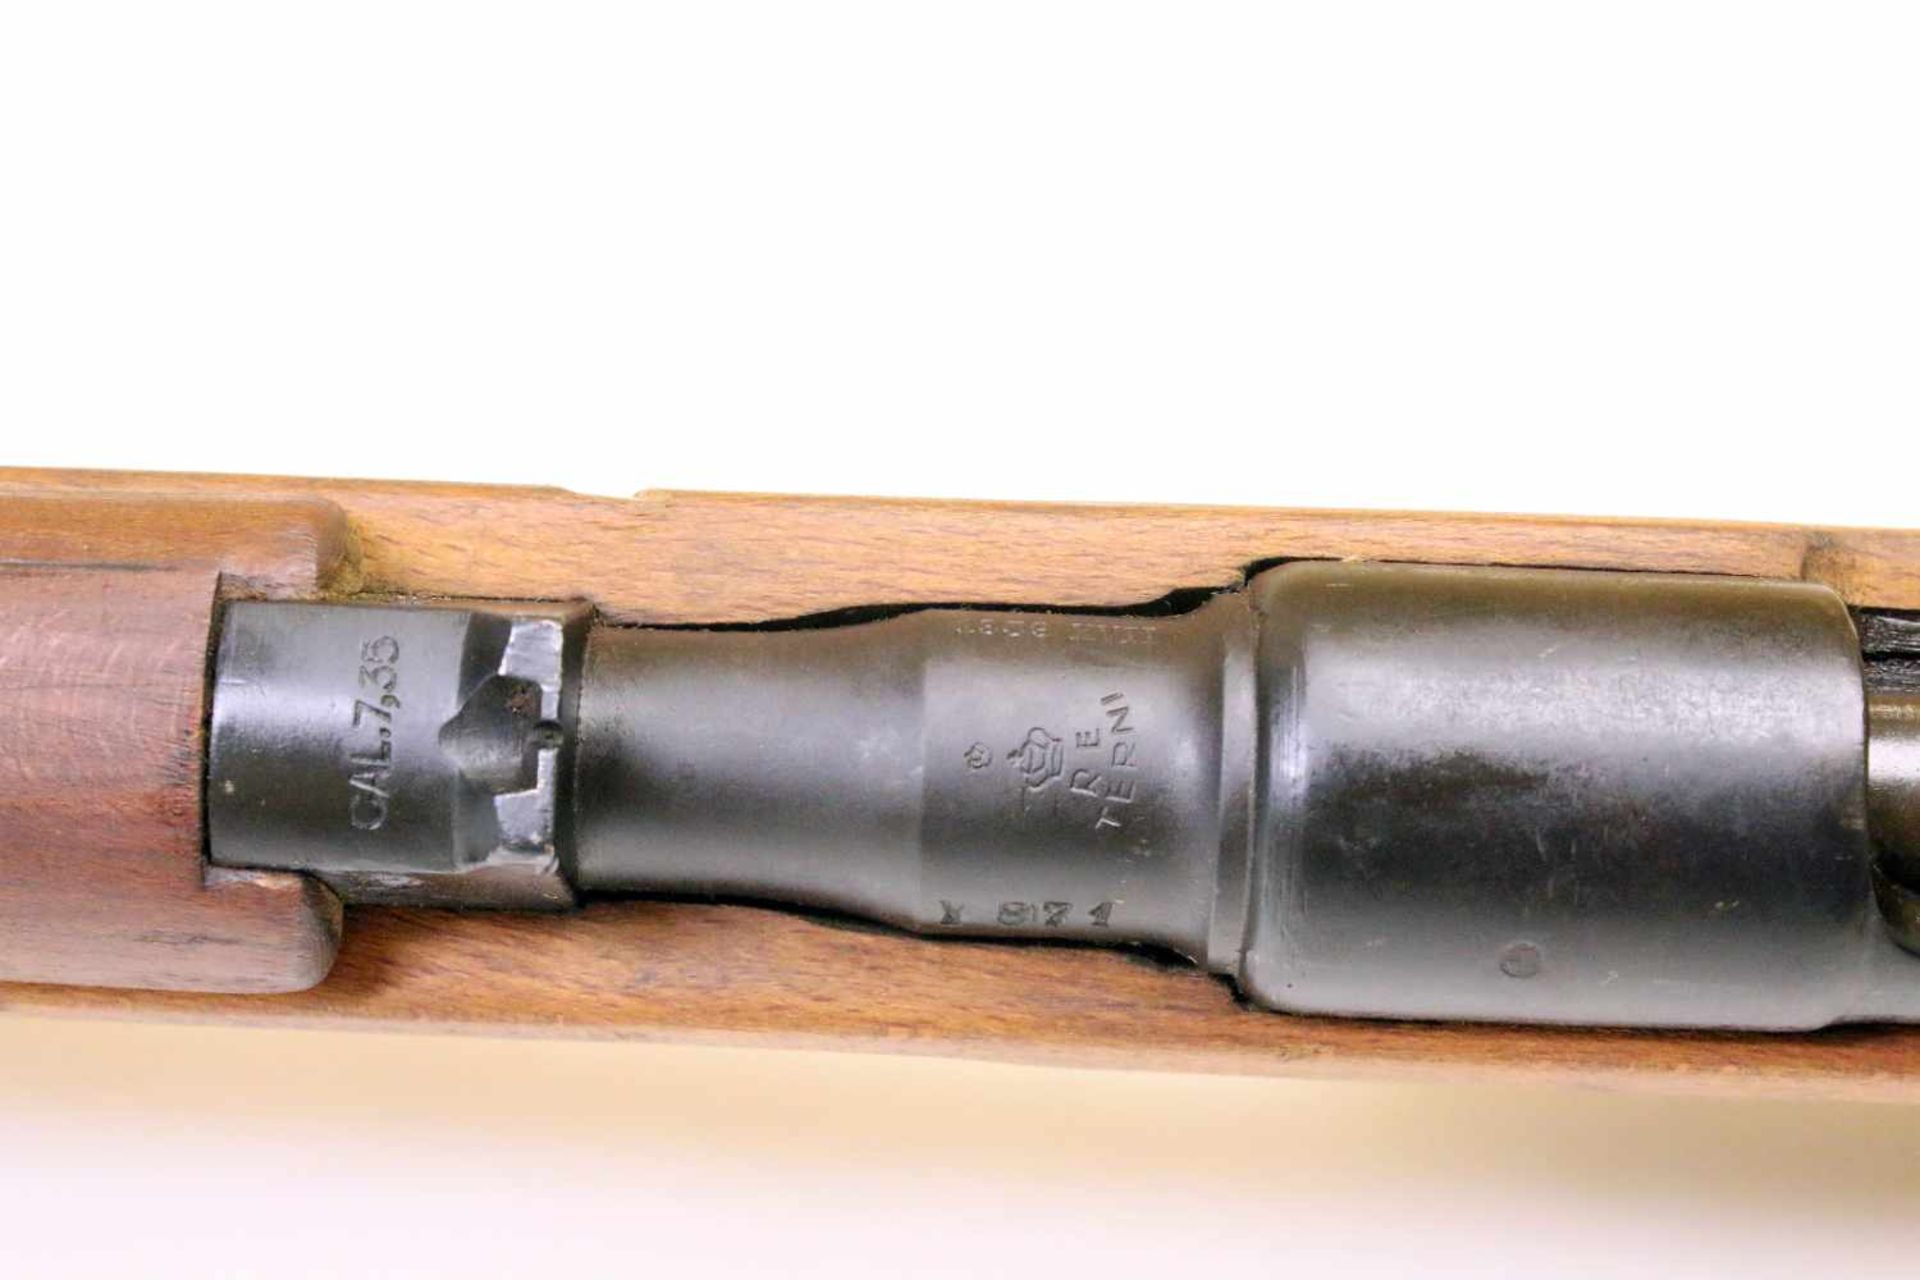 Karabiner Carcano M1938 Cal. 7,35mm carc., Lauf blank, Nr. Y871. Waffe gefertigt 1939 in Terni. - Bild 11 aus 12